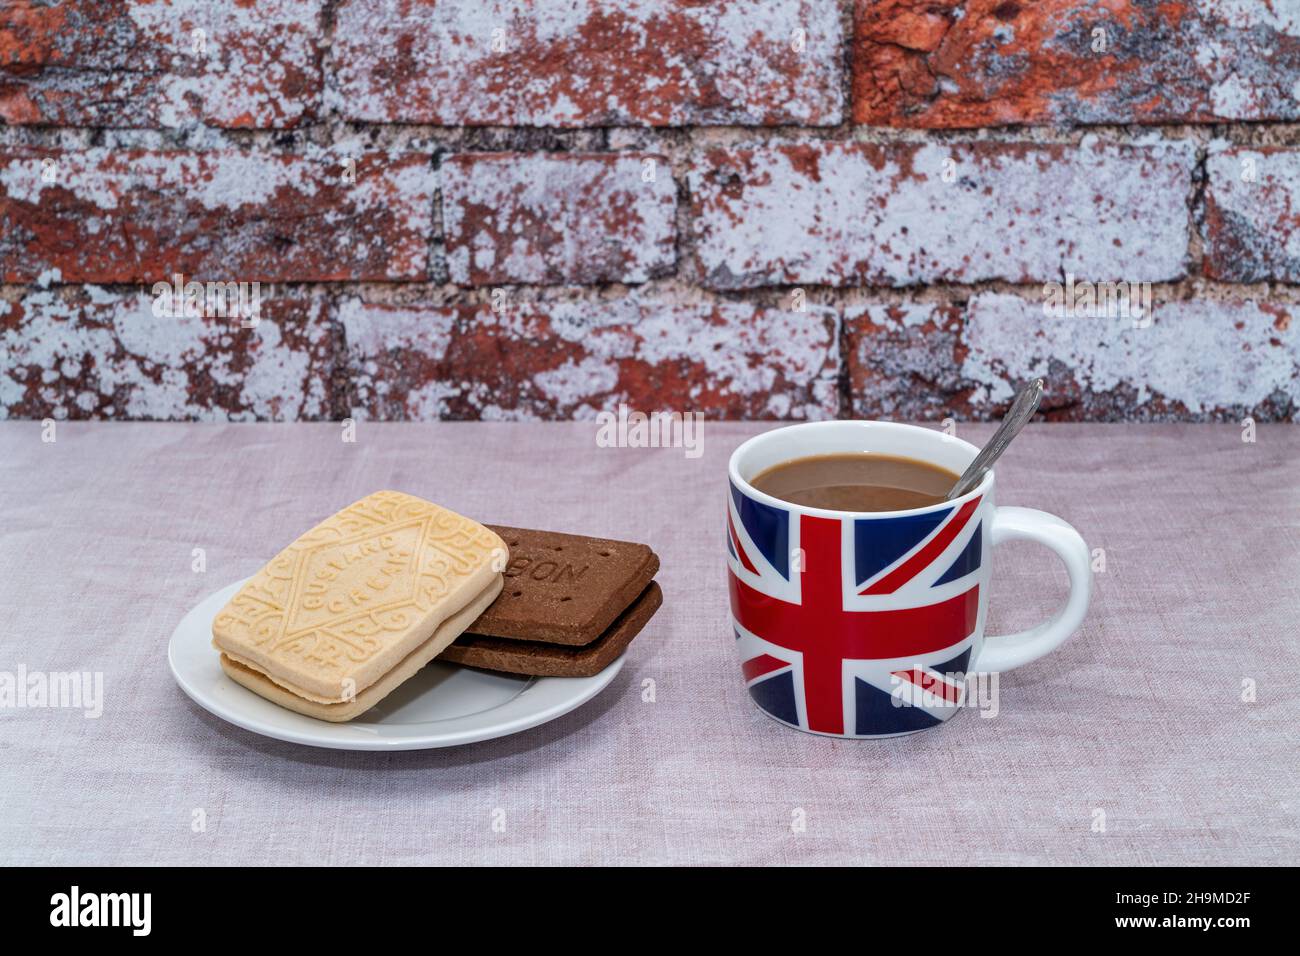 Britischer Becher mit einer britischen Union Jack-Flagge, einer Pudding-Creme und einem Bourbon-Keks aus Schokolade Stockfoto